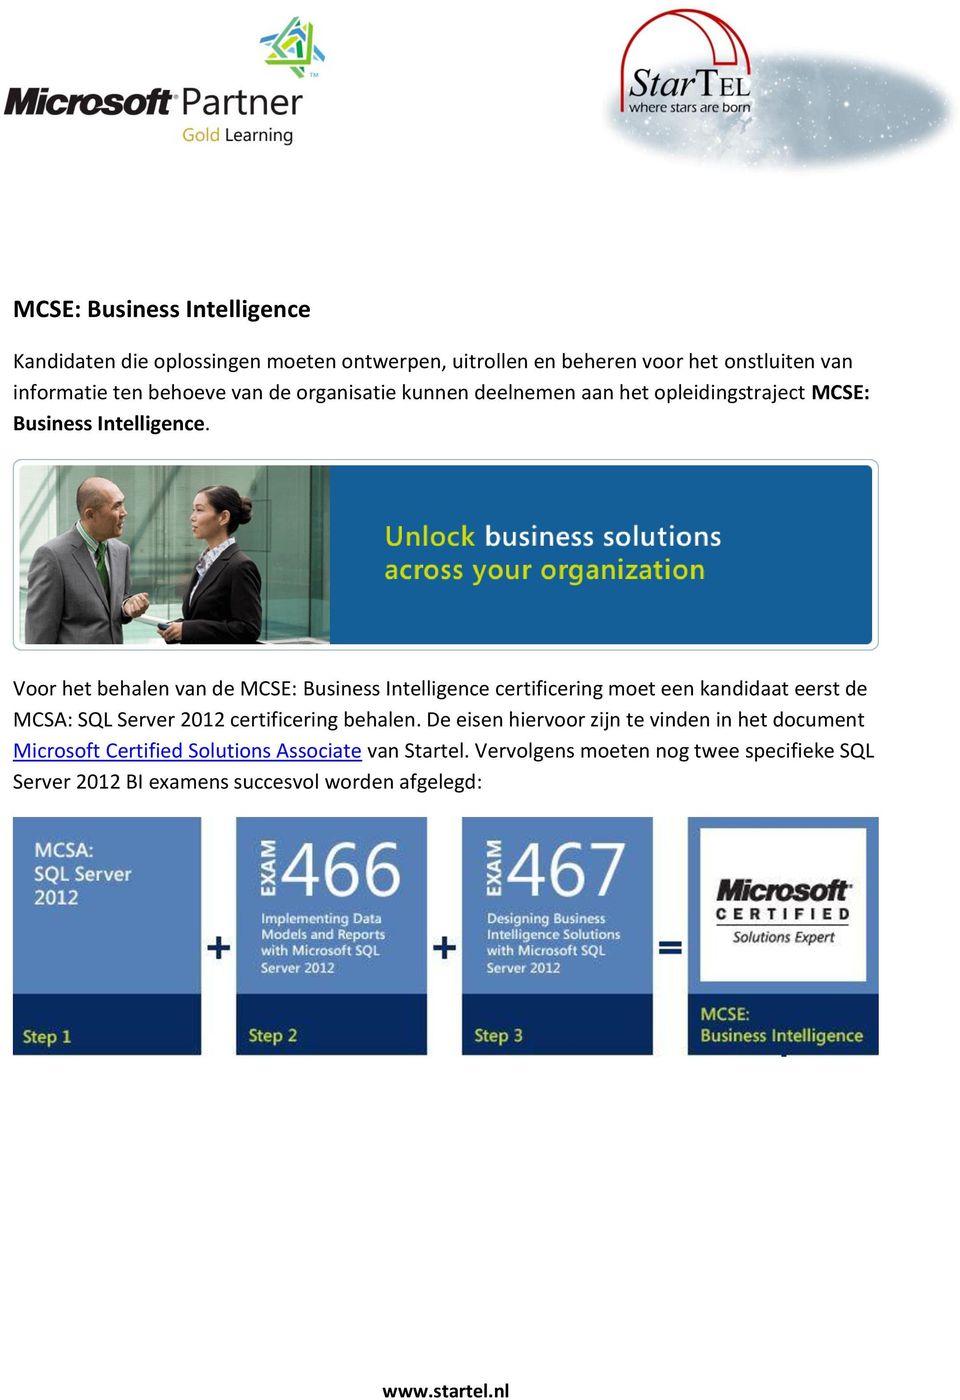 Voor het behalen van de MCSE: Business Intelligence certificering moet een kandidaat eerst de MCSA: SQL Server 2012 certificering behalen.